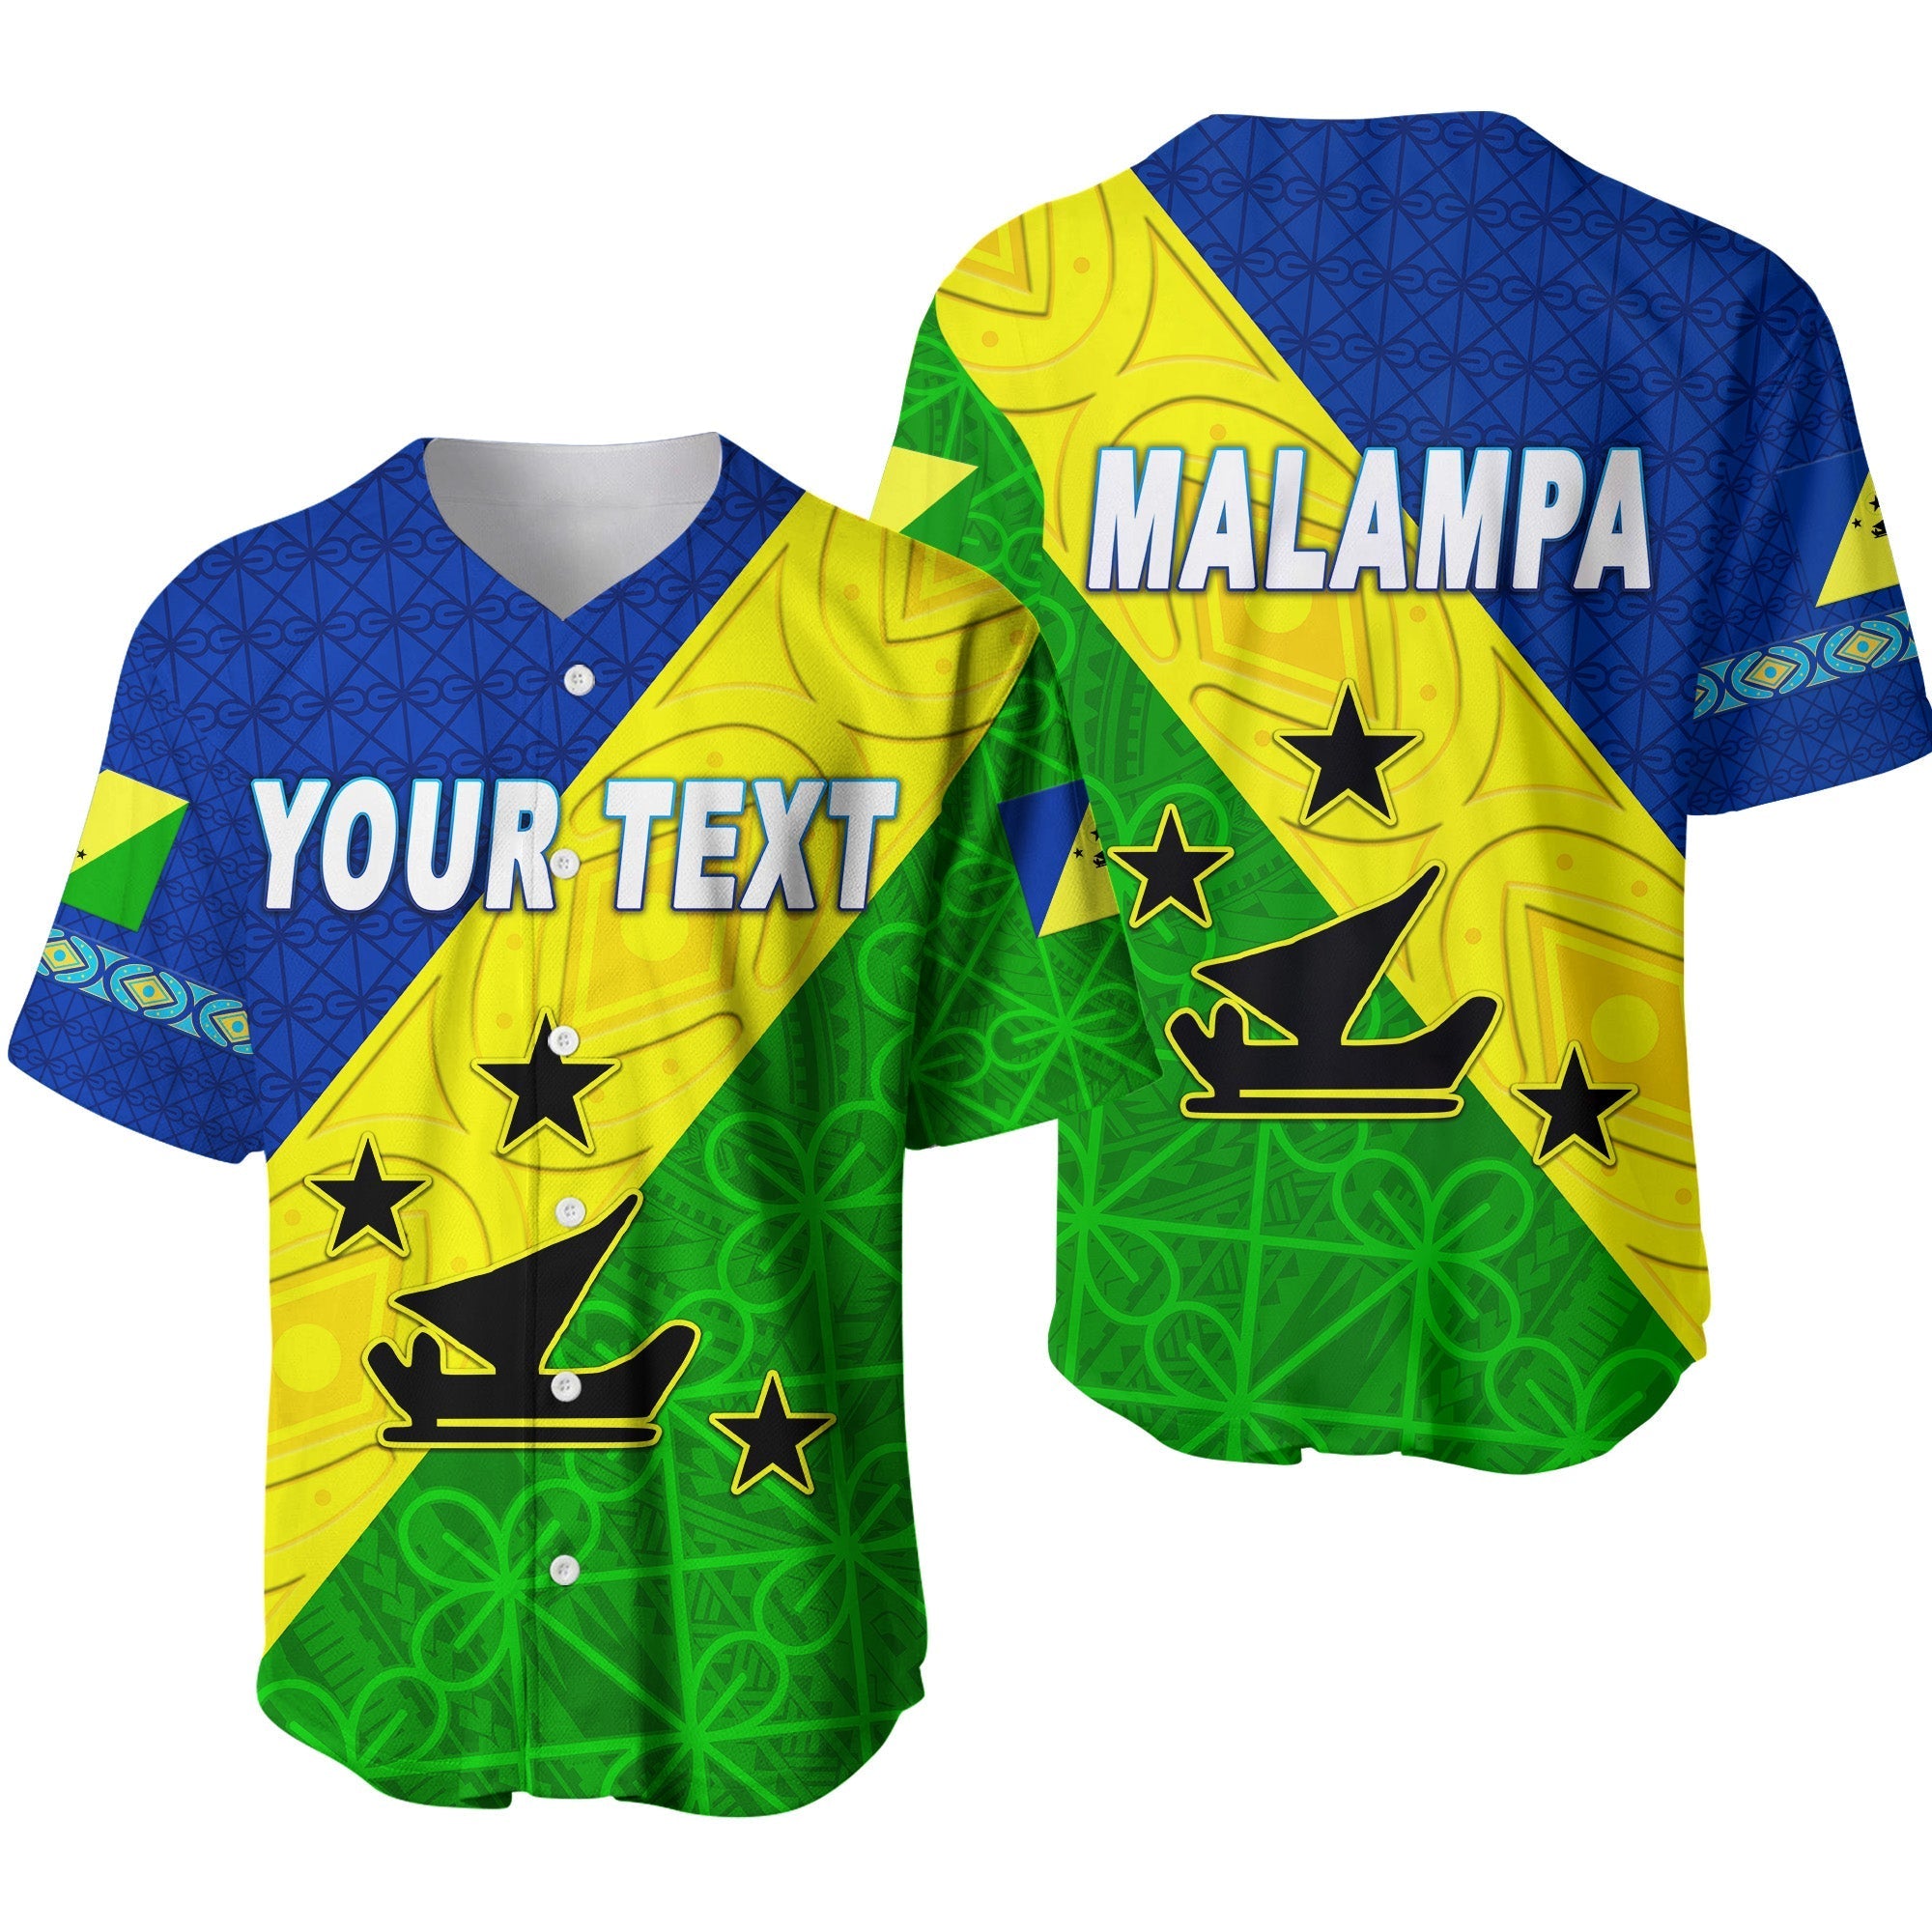 custom-personalised-malampa-province-baseball-jersey-vanuatu-pattern-unique-style